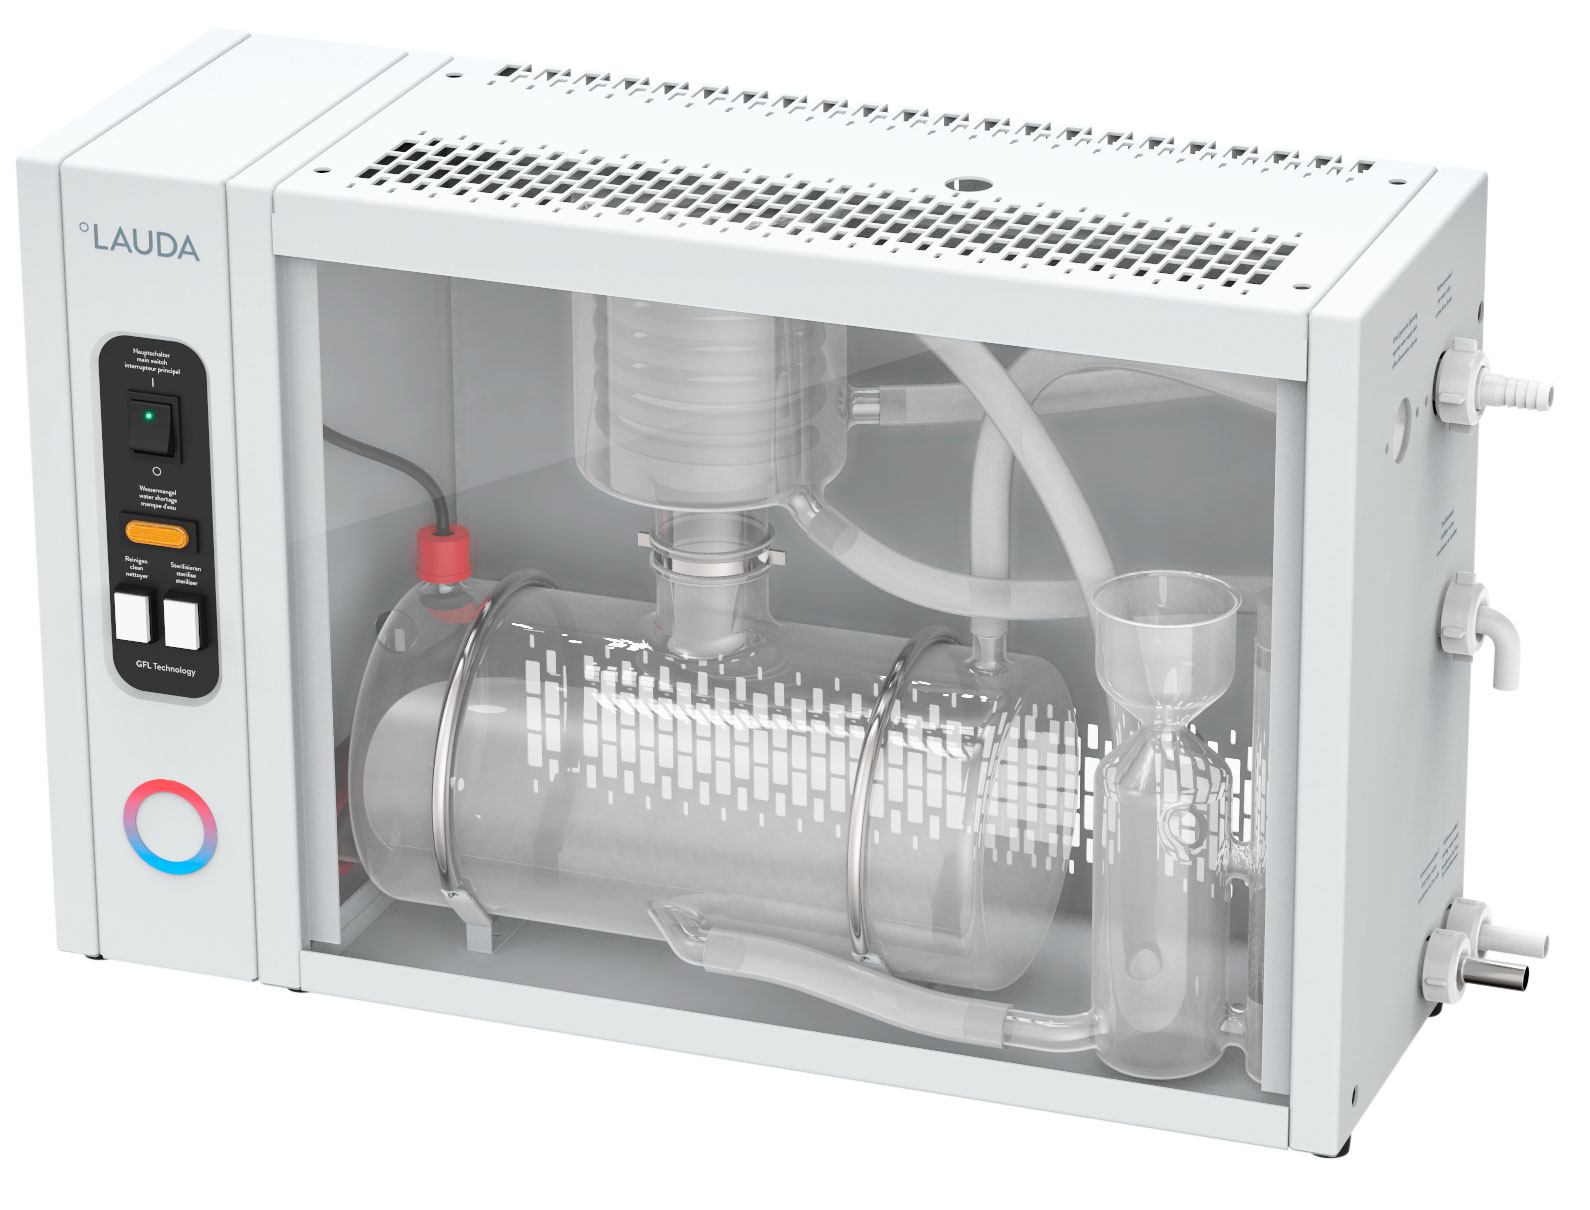 Destilador Puridest PD 2 G. LAUDA. Tipo de destilación: Mono. Material condensador: Vidrio. Rendimiento (L/h): 2. Conductancia etapa 1/2 (µS/cm): 2,2/-. Agua refrigeración consumida (l/min): 0,8. Dimensiones An x Al x Pr (mm): 650x390x200. Peso (kg): 16. Consumo (kW): 1,5